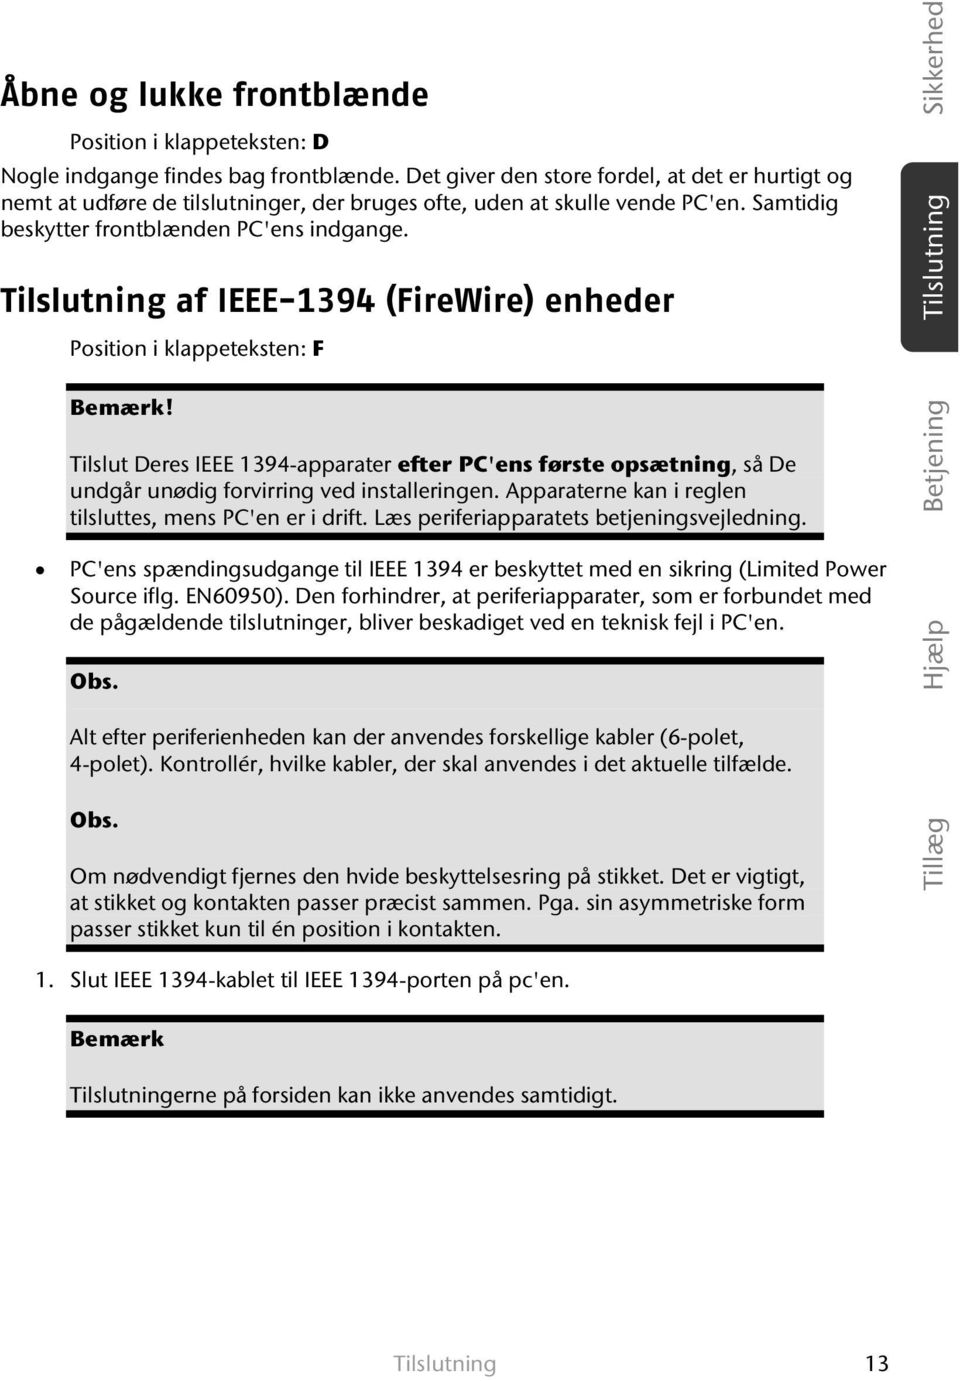 Tilslutning af IEEE-1394 (FireWire) enheder Position i klappeteksten: F Bemærk! Tilslut Deres IEEE 1394-apparater efter PC'ens første opsætning, så De undgår unødig forvirring ved installeringen.